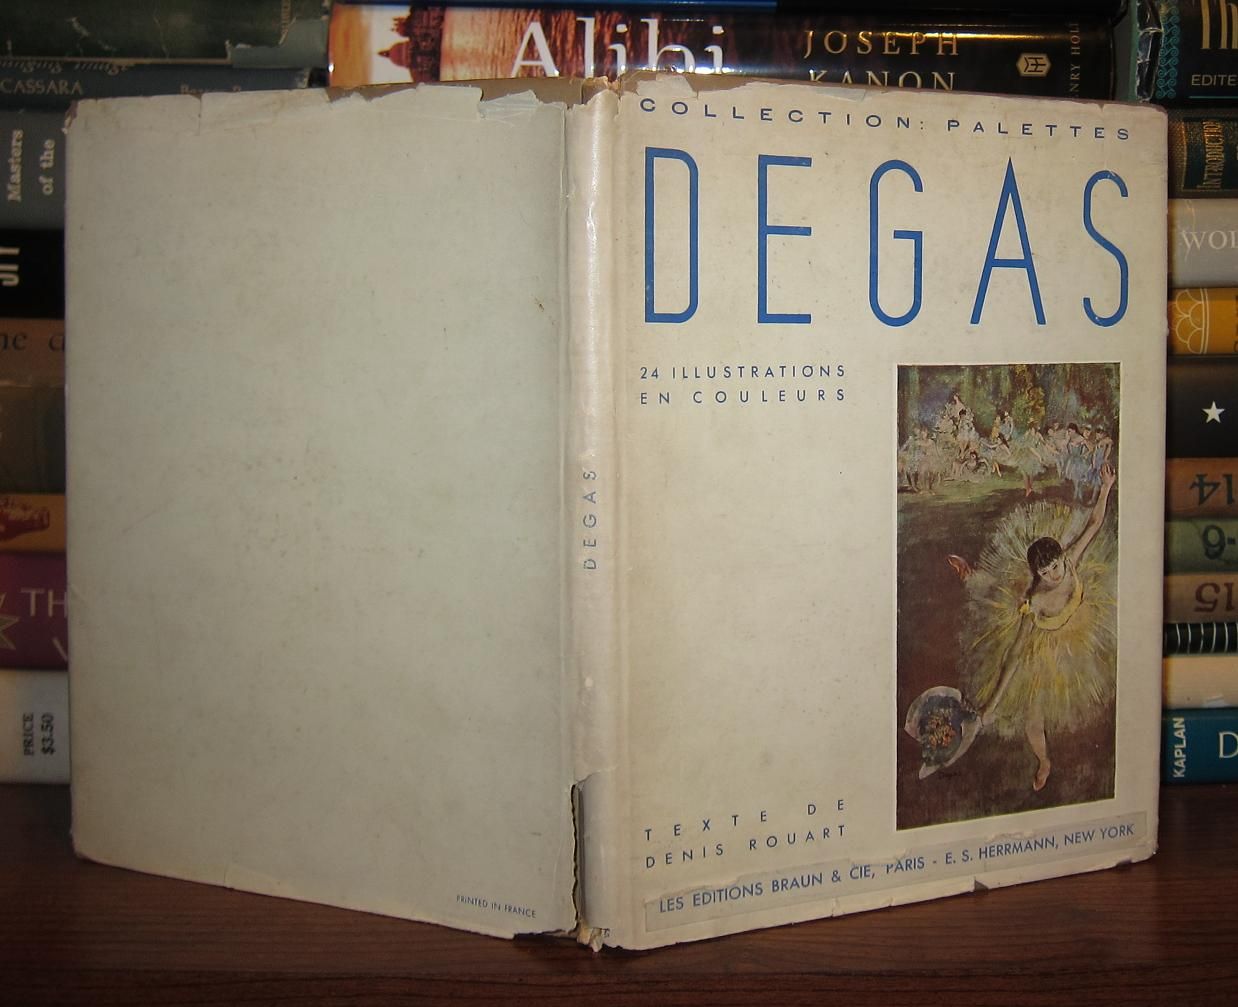 ROUART, DENIS - Degas Collection: Palettes